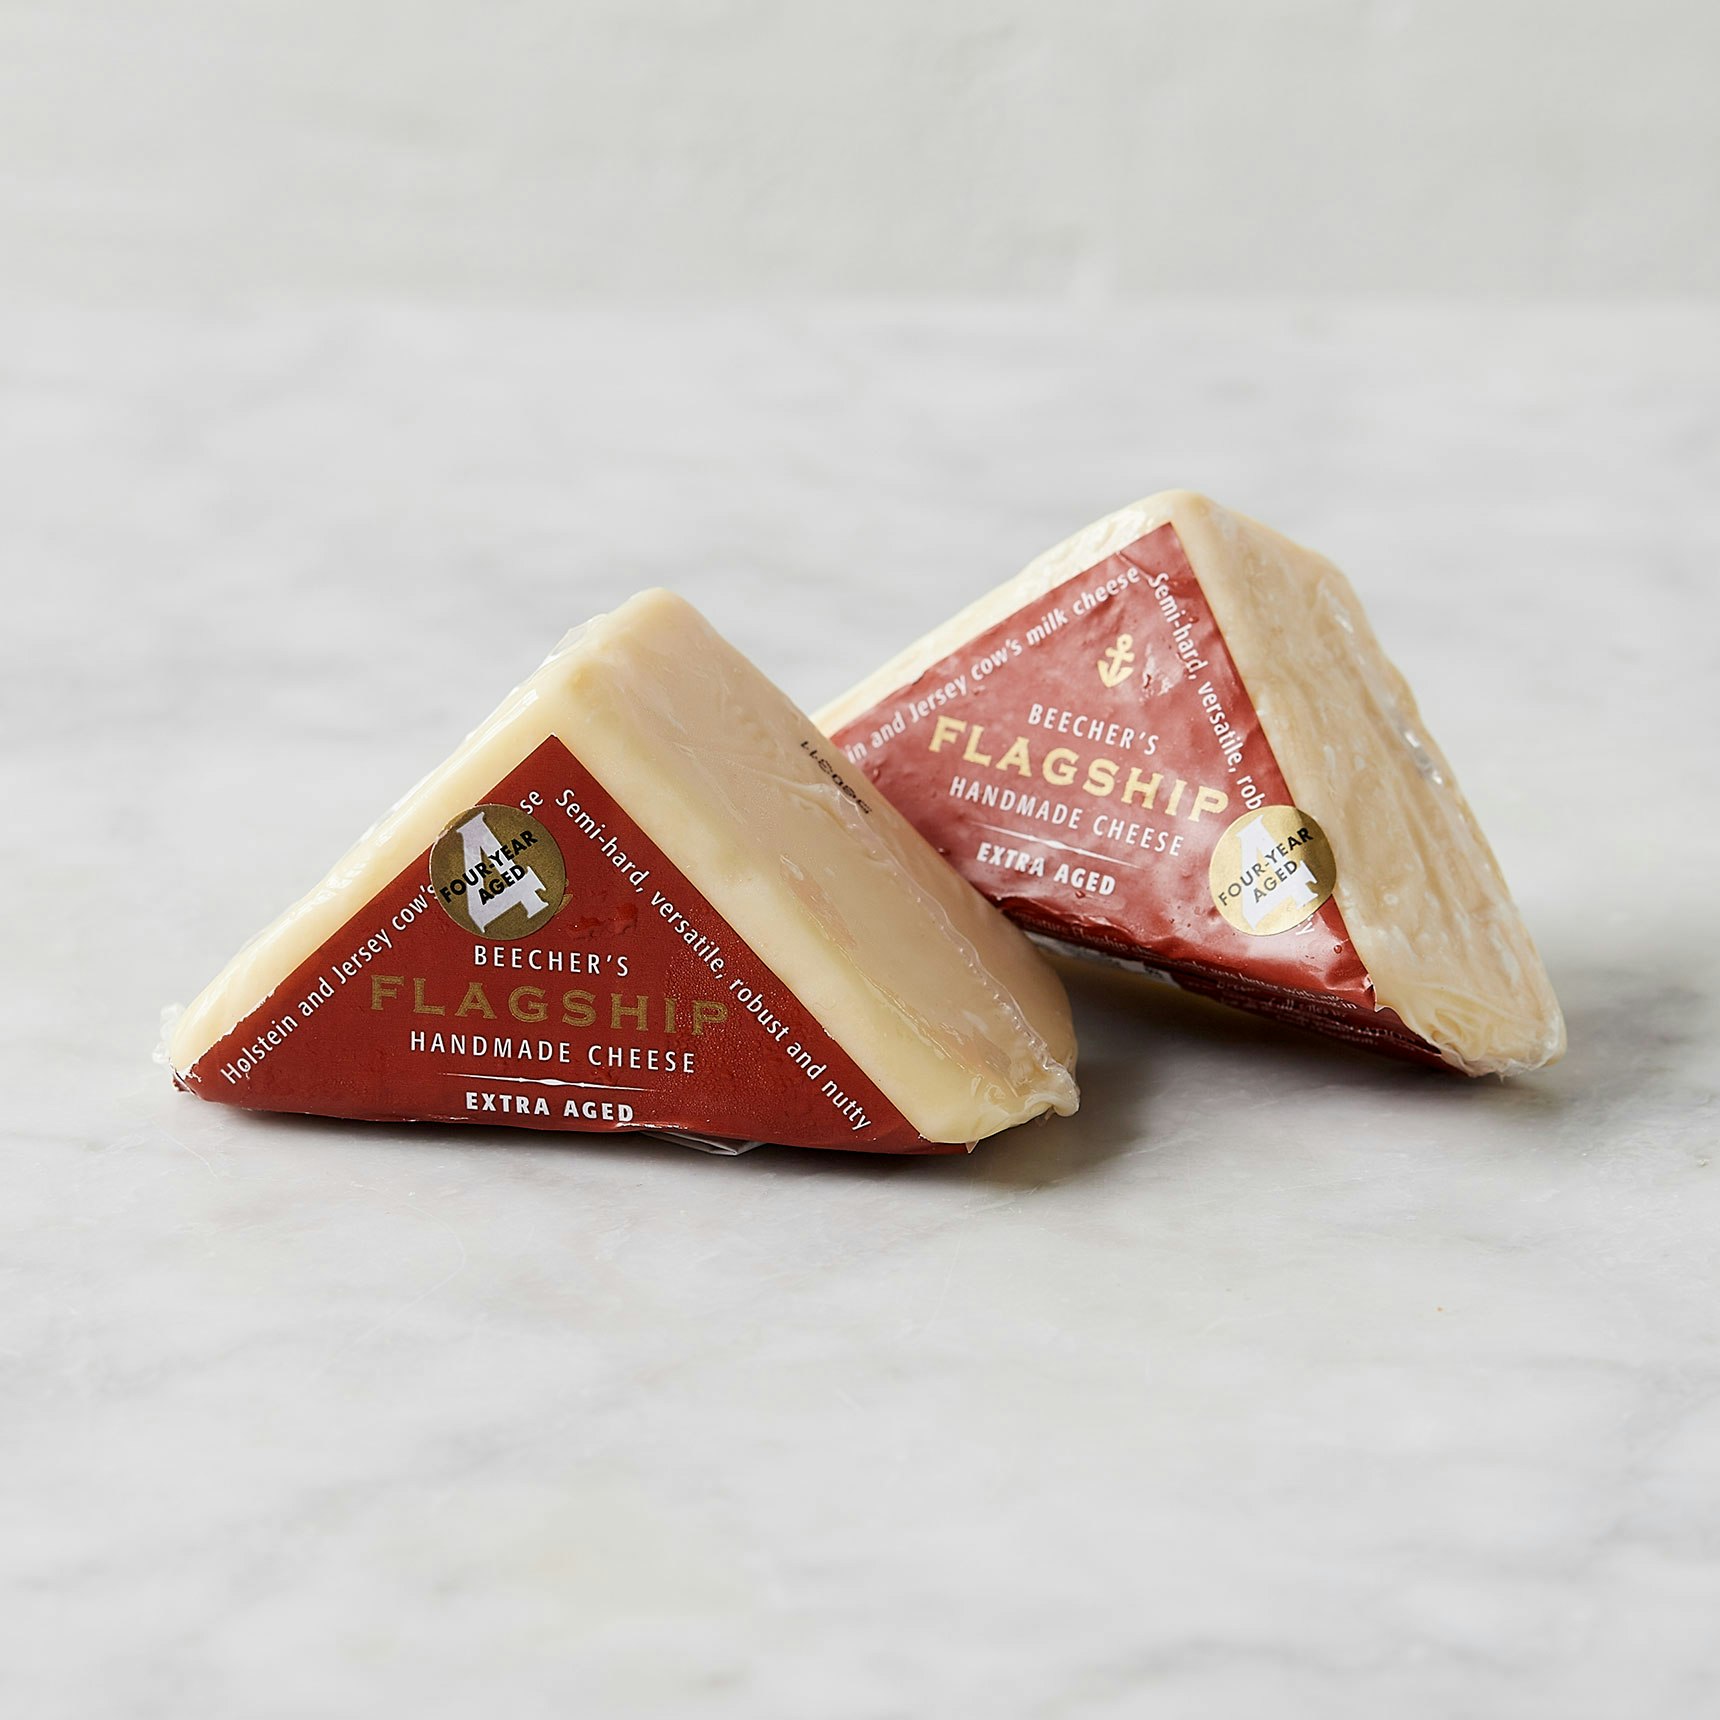 Beecher's Handmade Cheese Flagship 4 Year